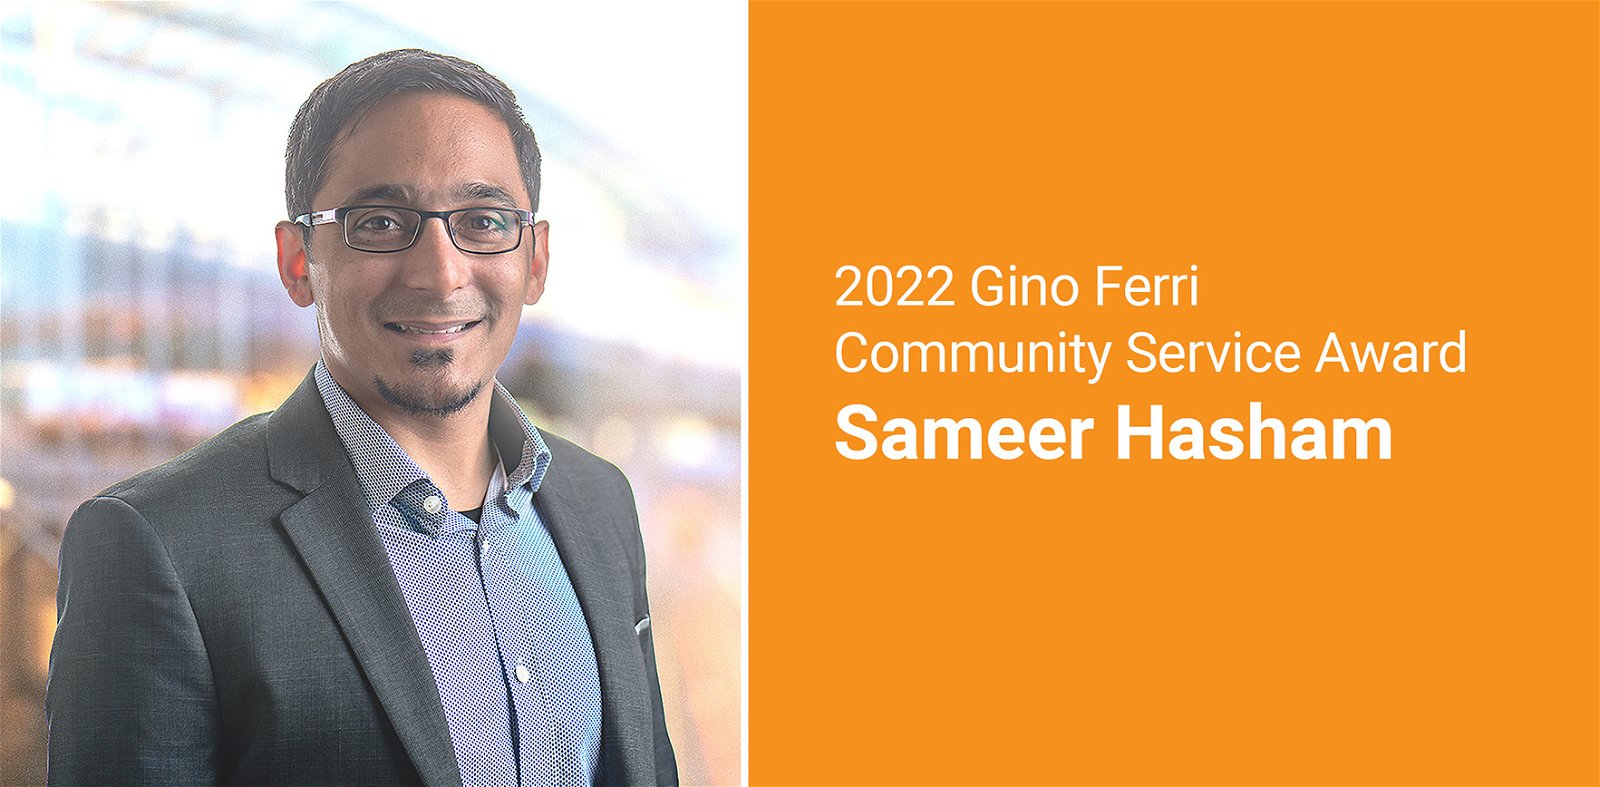 Gino Ferri Community Service Award Presented to Sameer Hasham